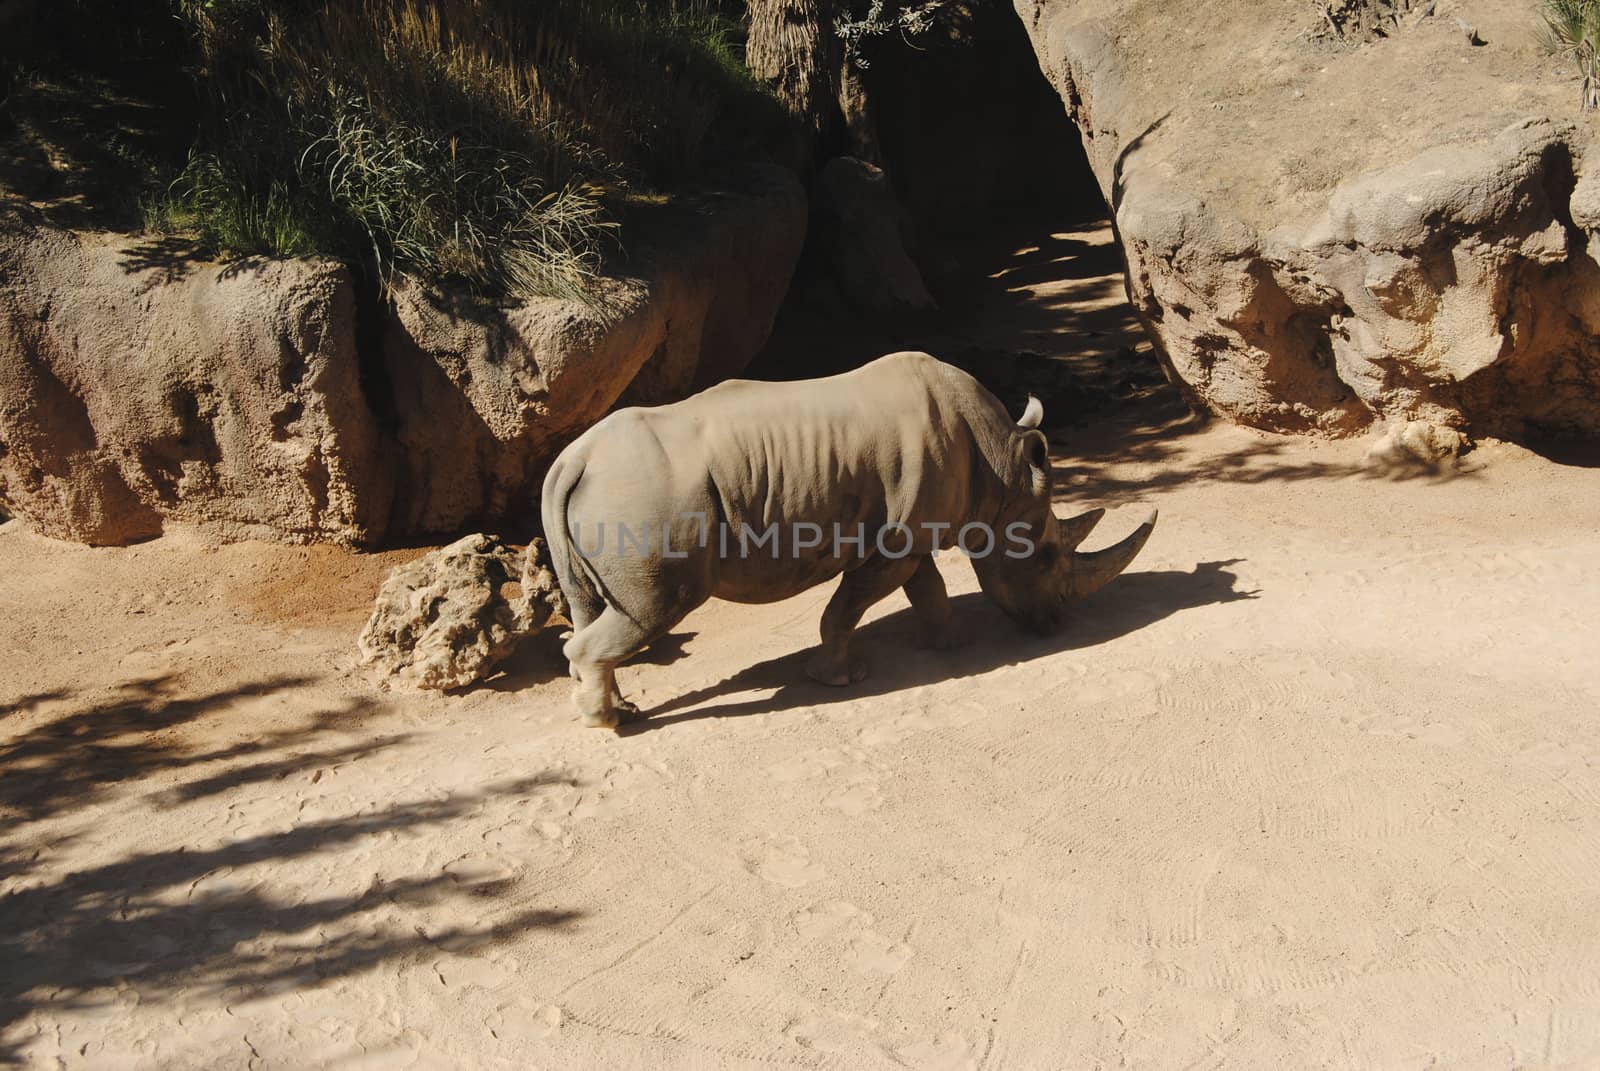 Rhinoceros walking on the sand. by raul_ruiz